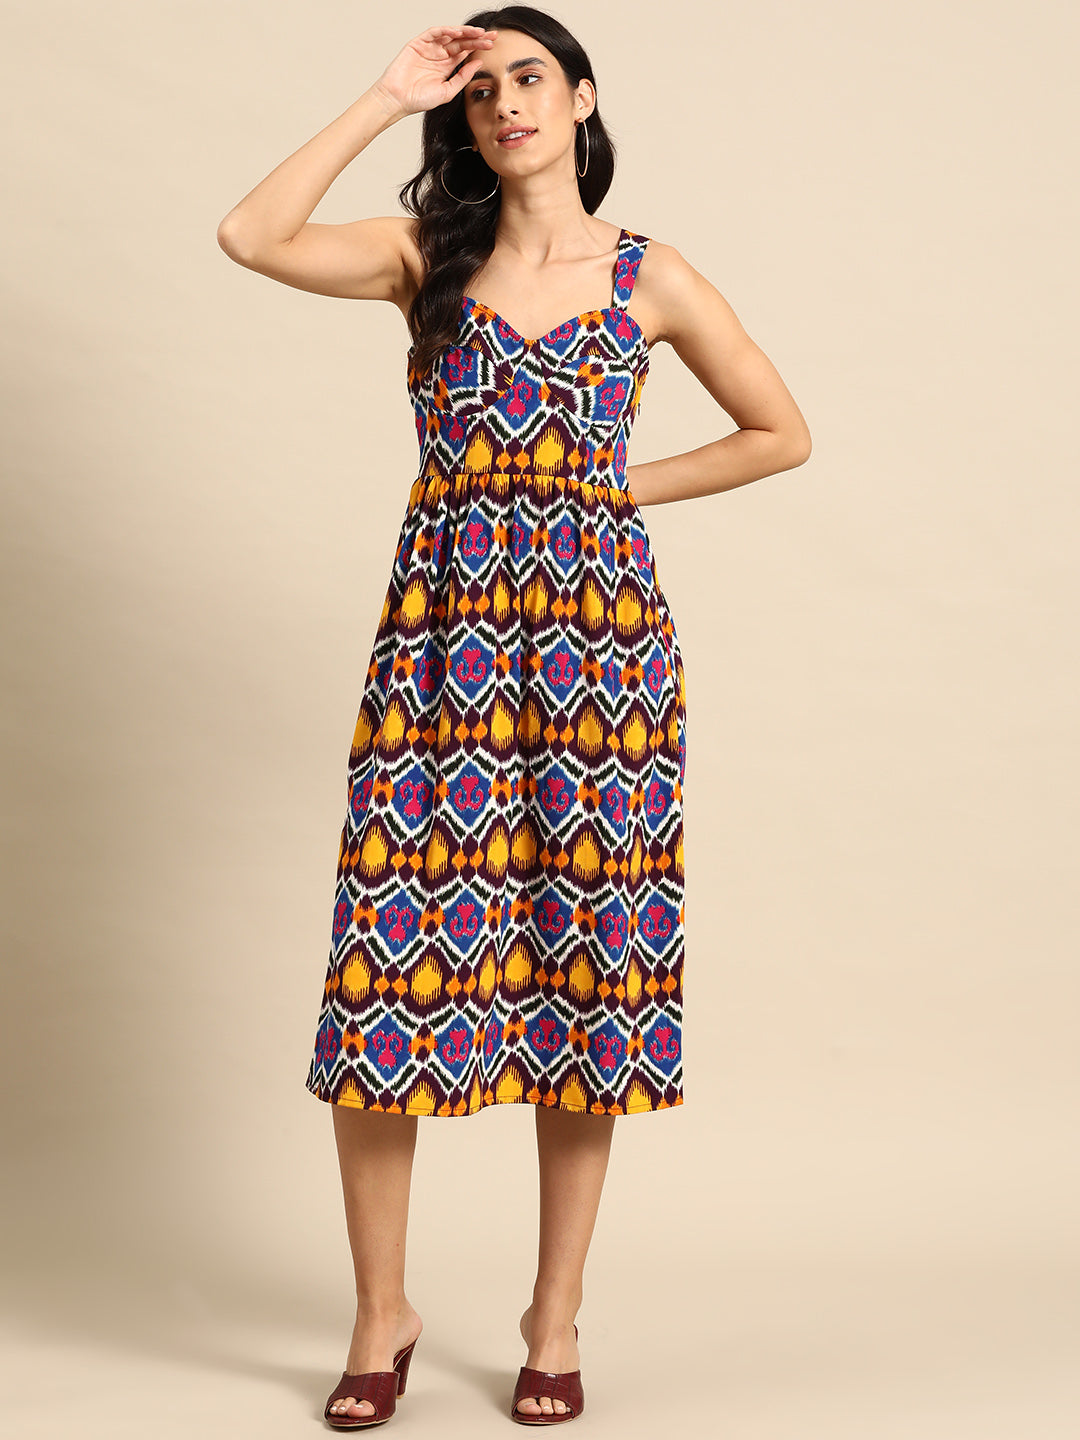 Corset Top Midi Dress in Multi color Ikkat Print